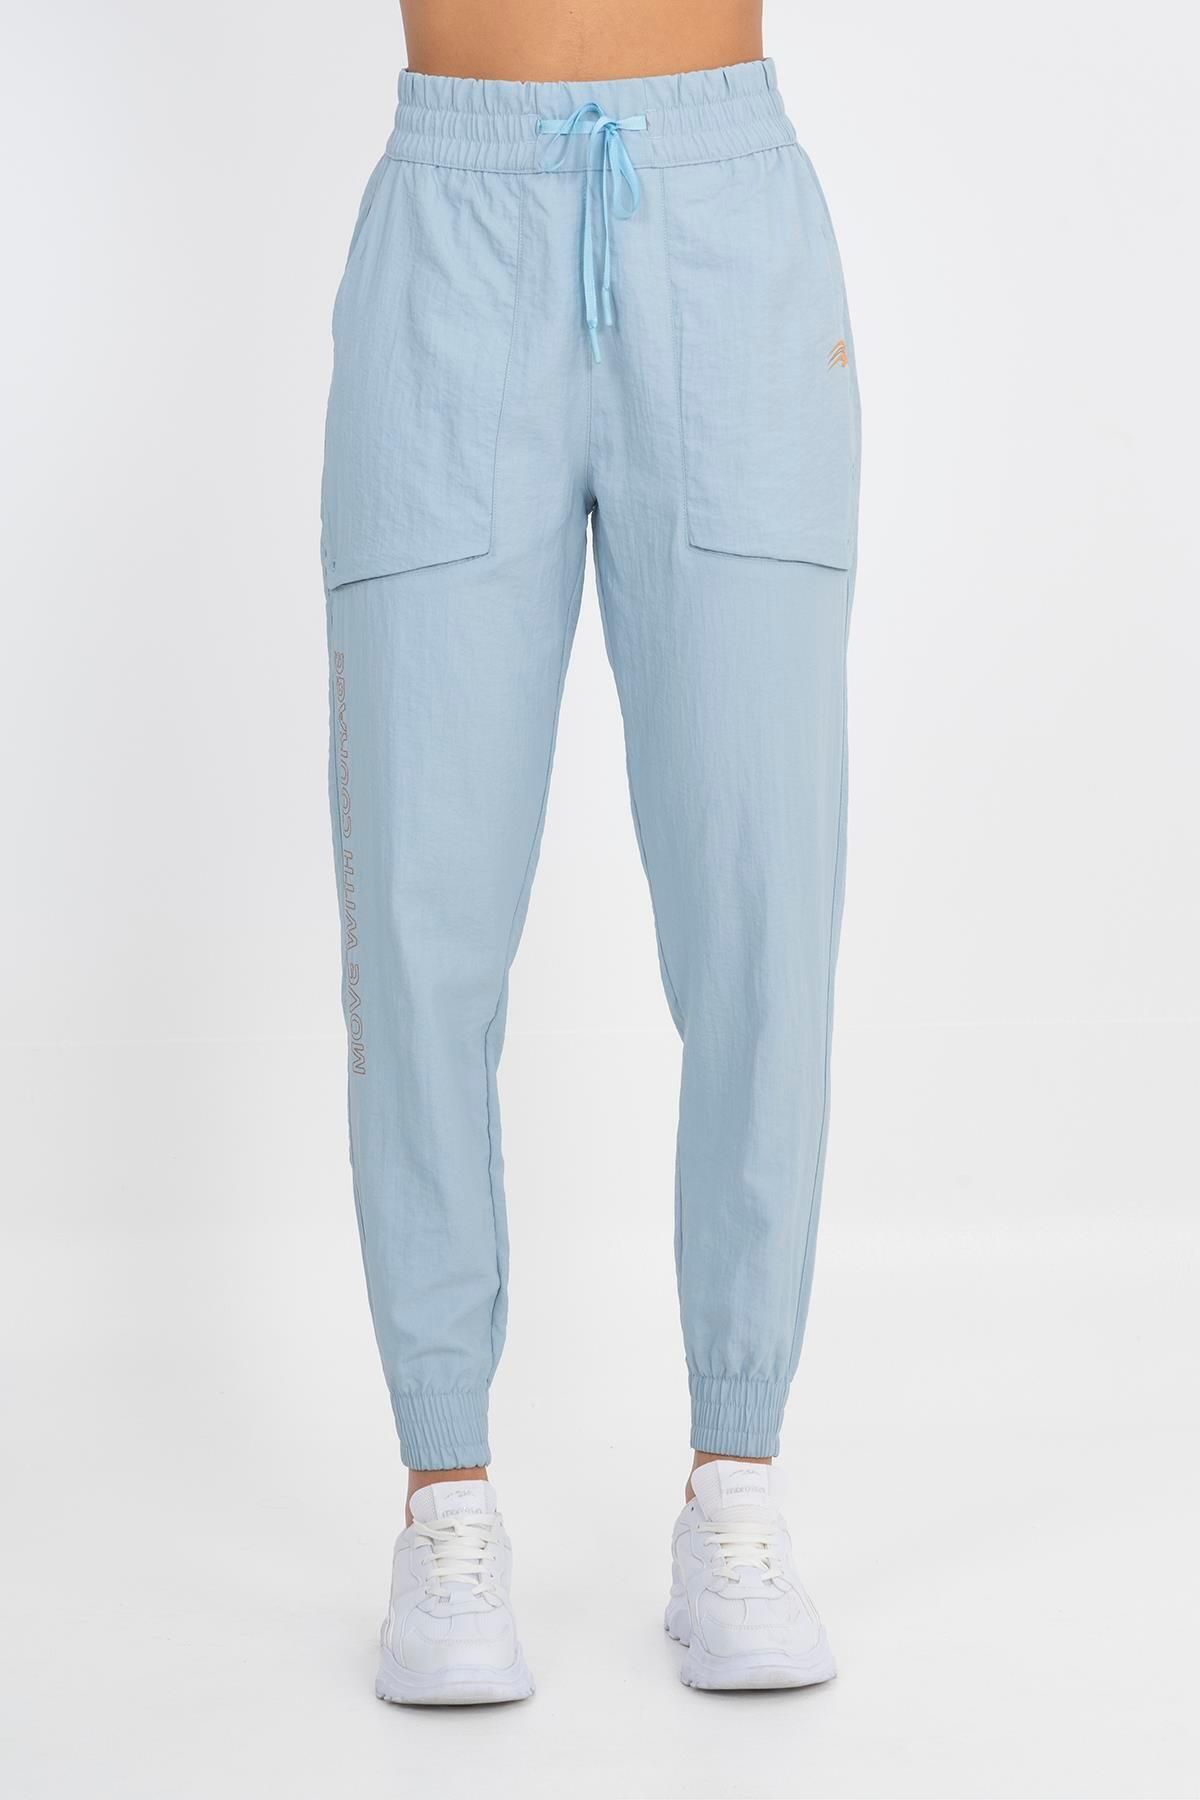 MARATON Sportswear Comfort Kadın Bol Dönüşlü Paça Basic Sisli Mavi Pantolon 21124